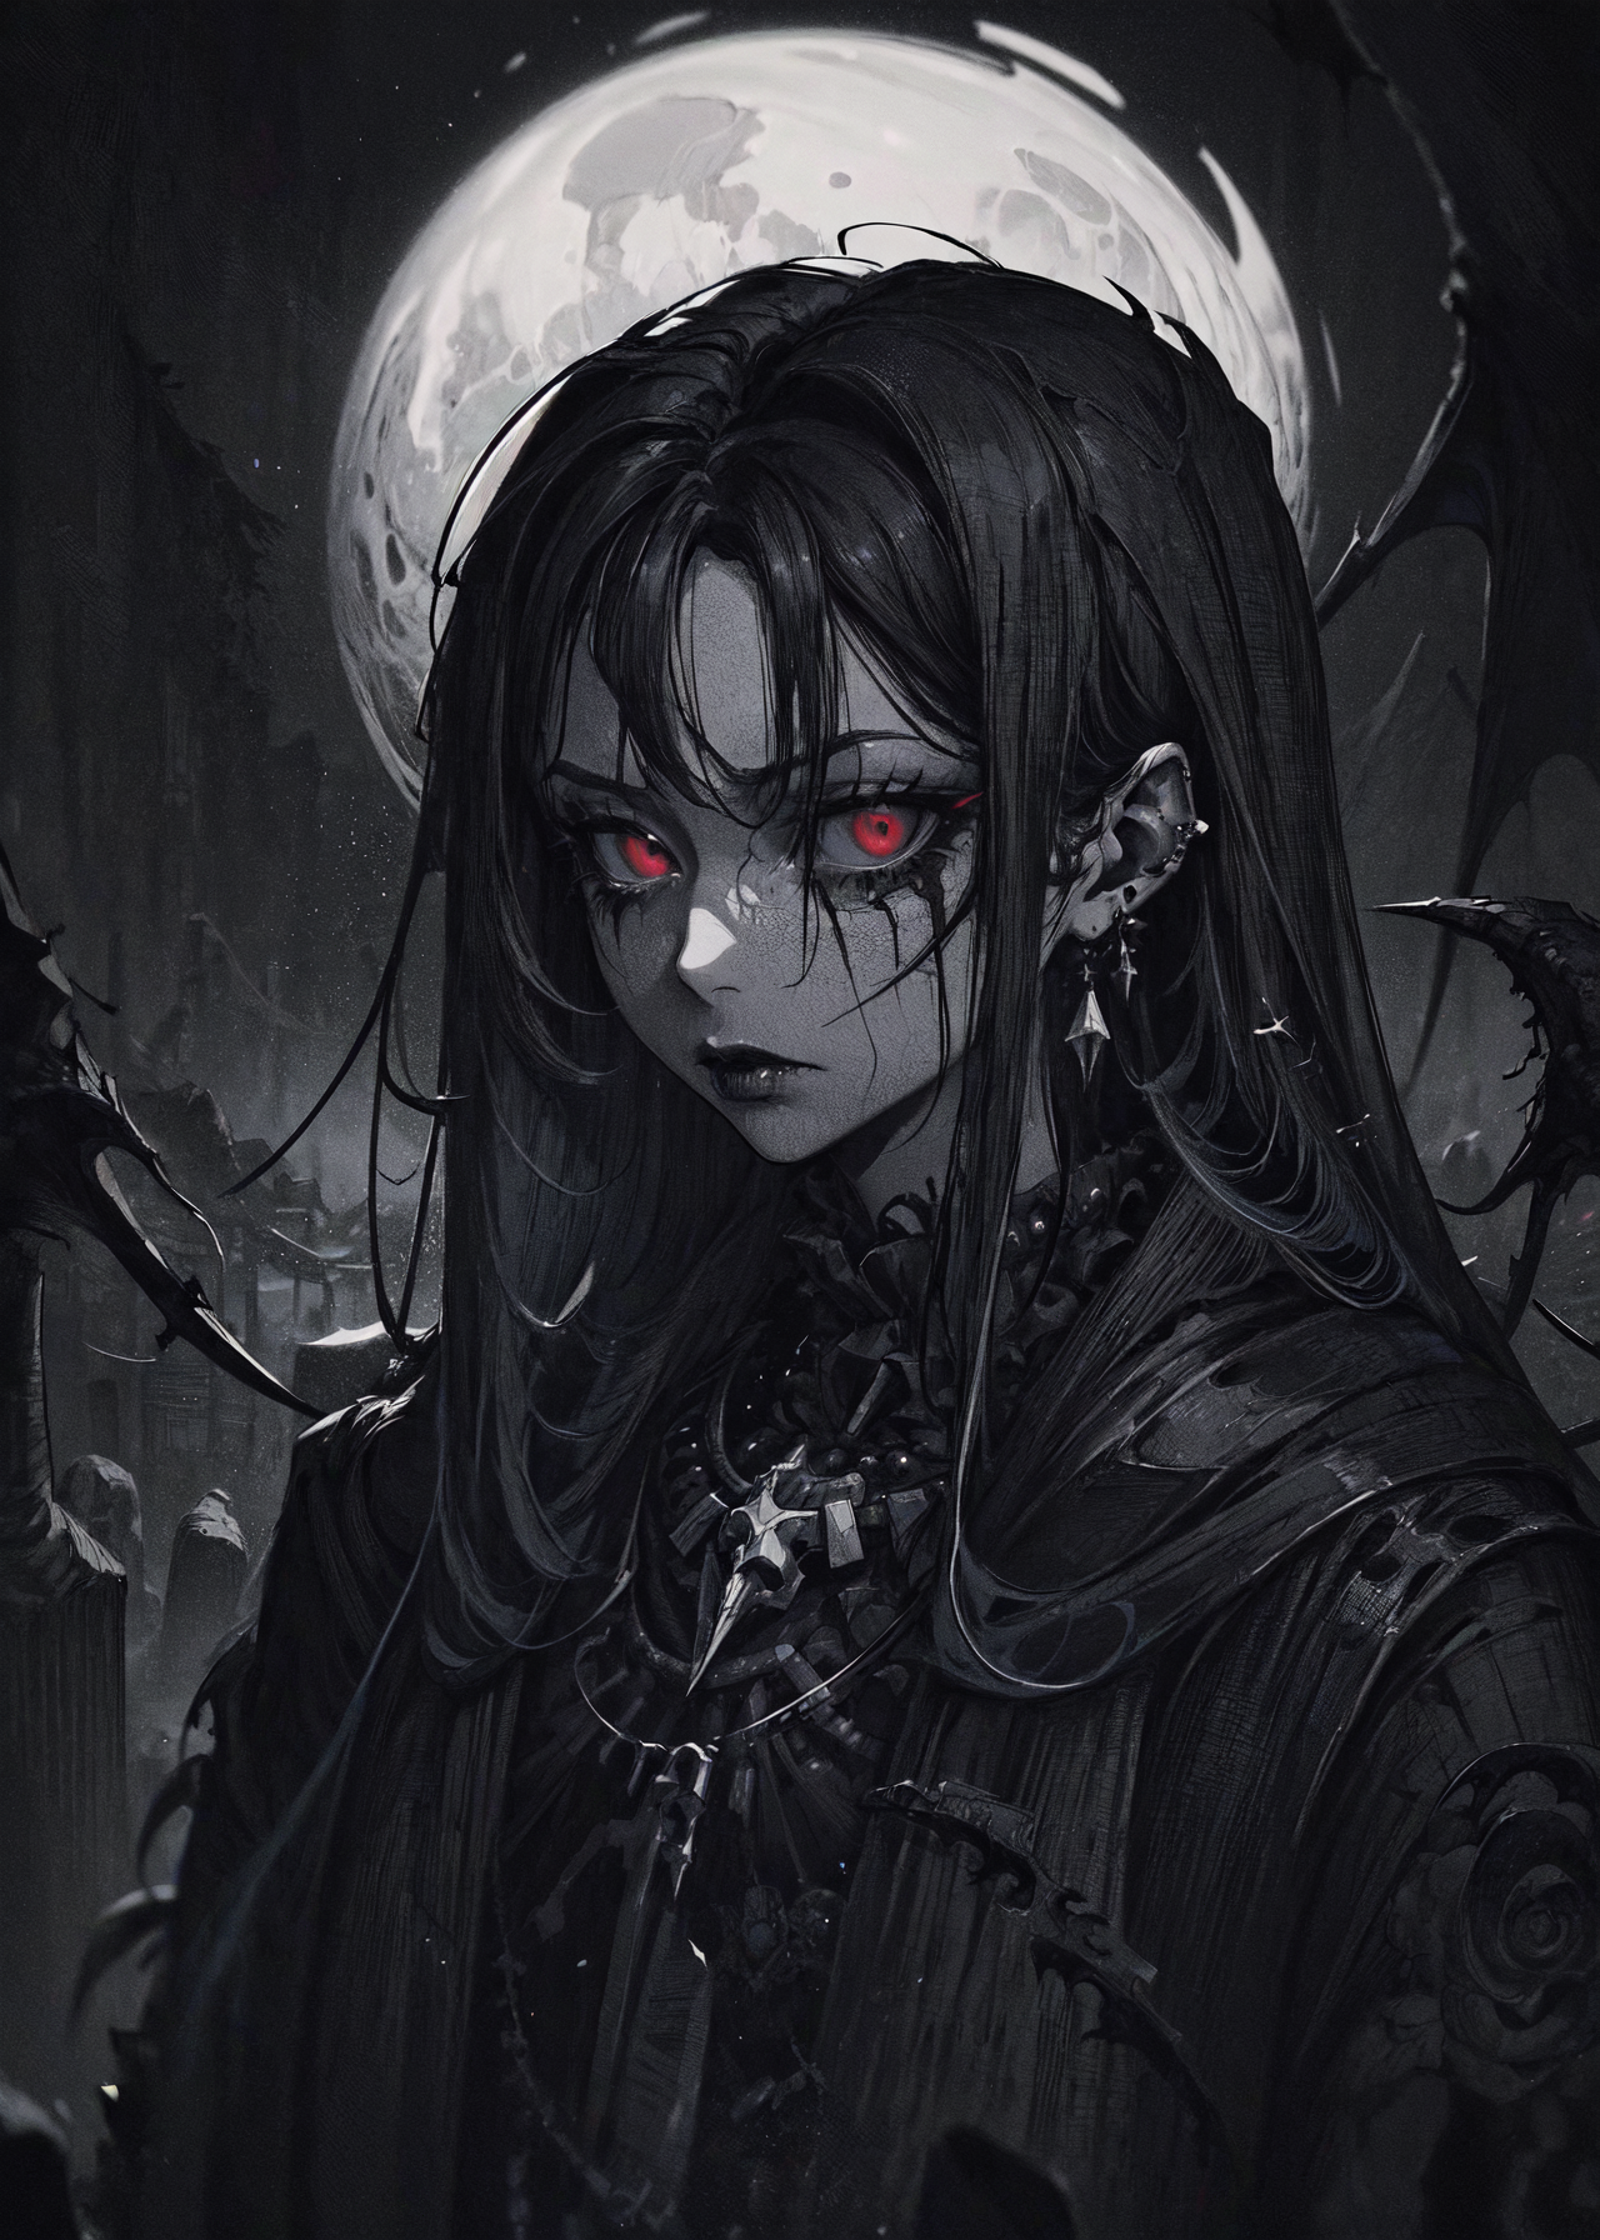 Gothic Girl image by 0_vortex